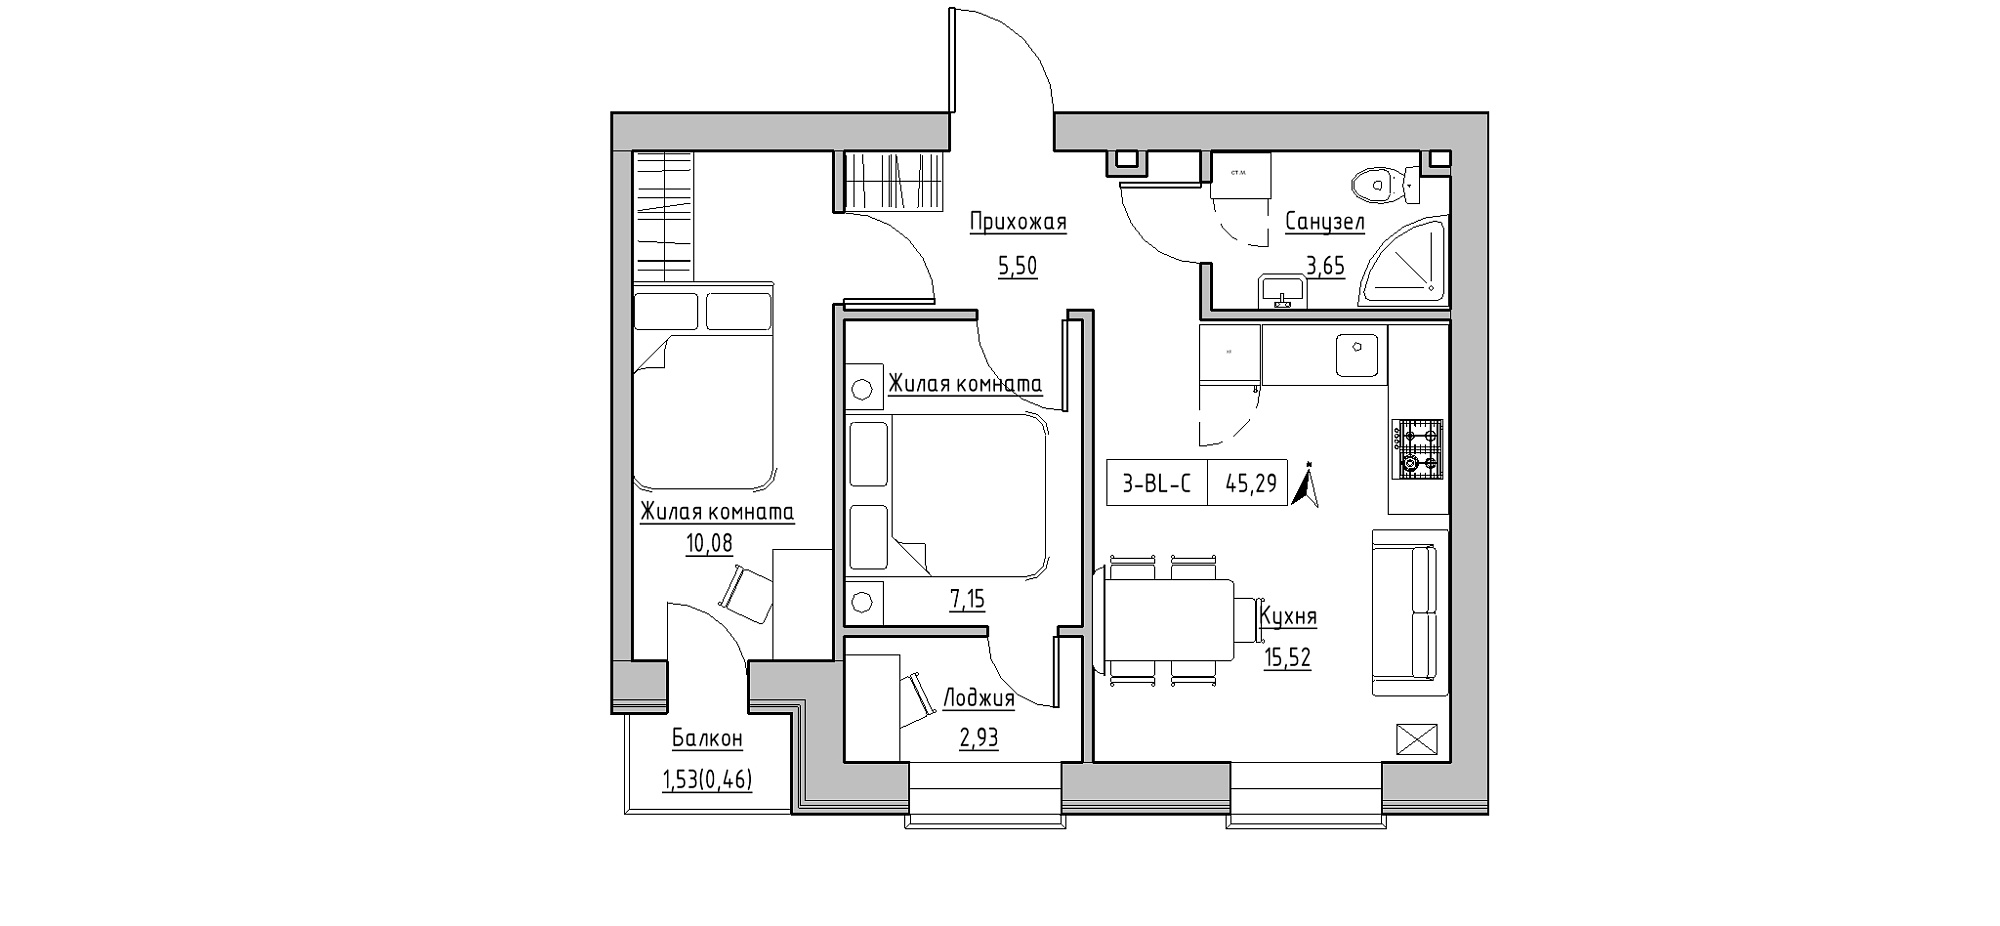 Планування 3-к квартира площею 45.29м2, KS-020-02/0008.